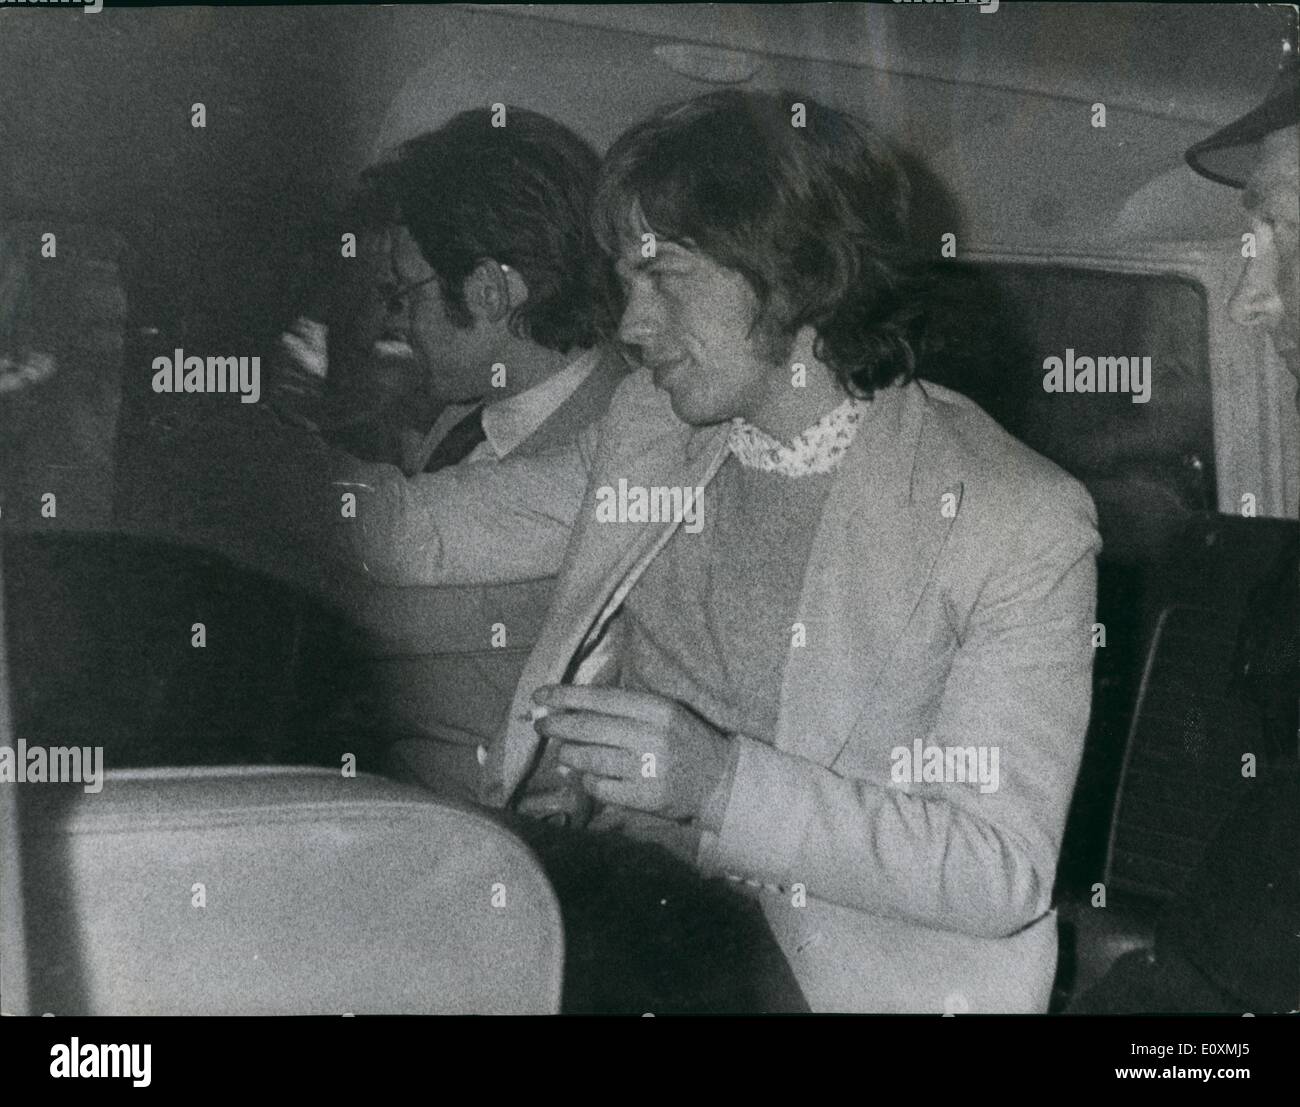 6. Juni 1967 - Mick Jagger und Keith Richard von den Rolling Stones erhalten Haftstrafen verurteilt: die £ 1 Million eine Jahr Karriere der Rolling Stones kam es ist eine vorübergehende Aussetzung bei Chichester gestern, wenn eine Jury aus 11 Männer und eine Frau gefunden Keith Richard, führende Gitarrist, fand schuldig, woraufhin seine Bauernhaus, Redlands, West Wittering, Sussex, für Rauchen indischer Hanf verwendet werden. Mick Jagger, der Lead-Sänger einer Straftat schuldig gemacht an denen nach einem Jahr Drogen fand. Richard wurde geschickt, um für ein Jahr und Jagger für drei Monate ins Gefängnis Stockfoto